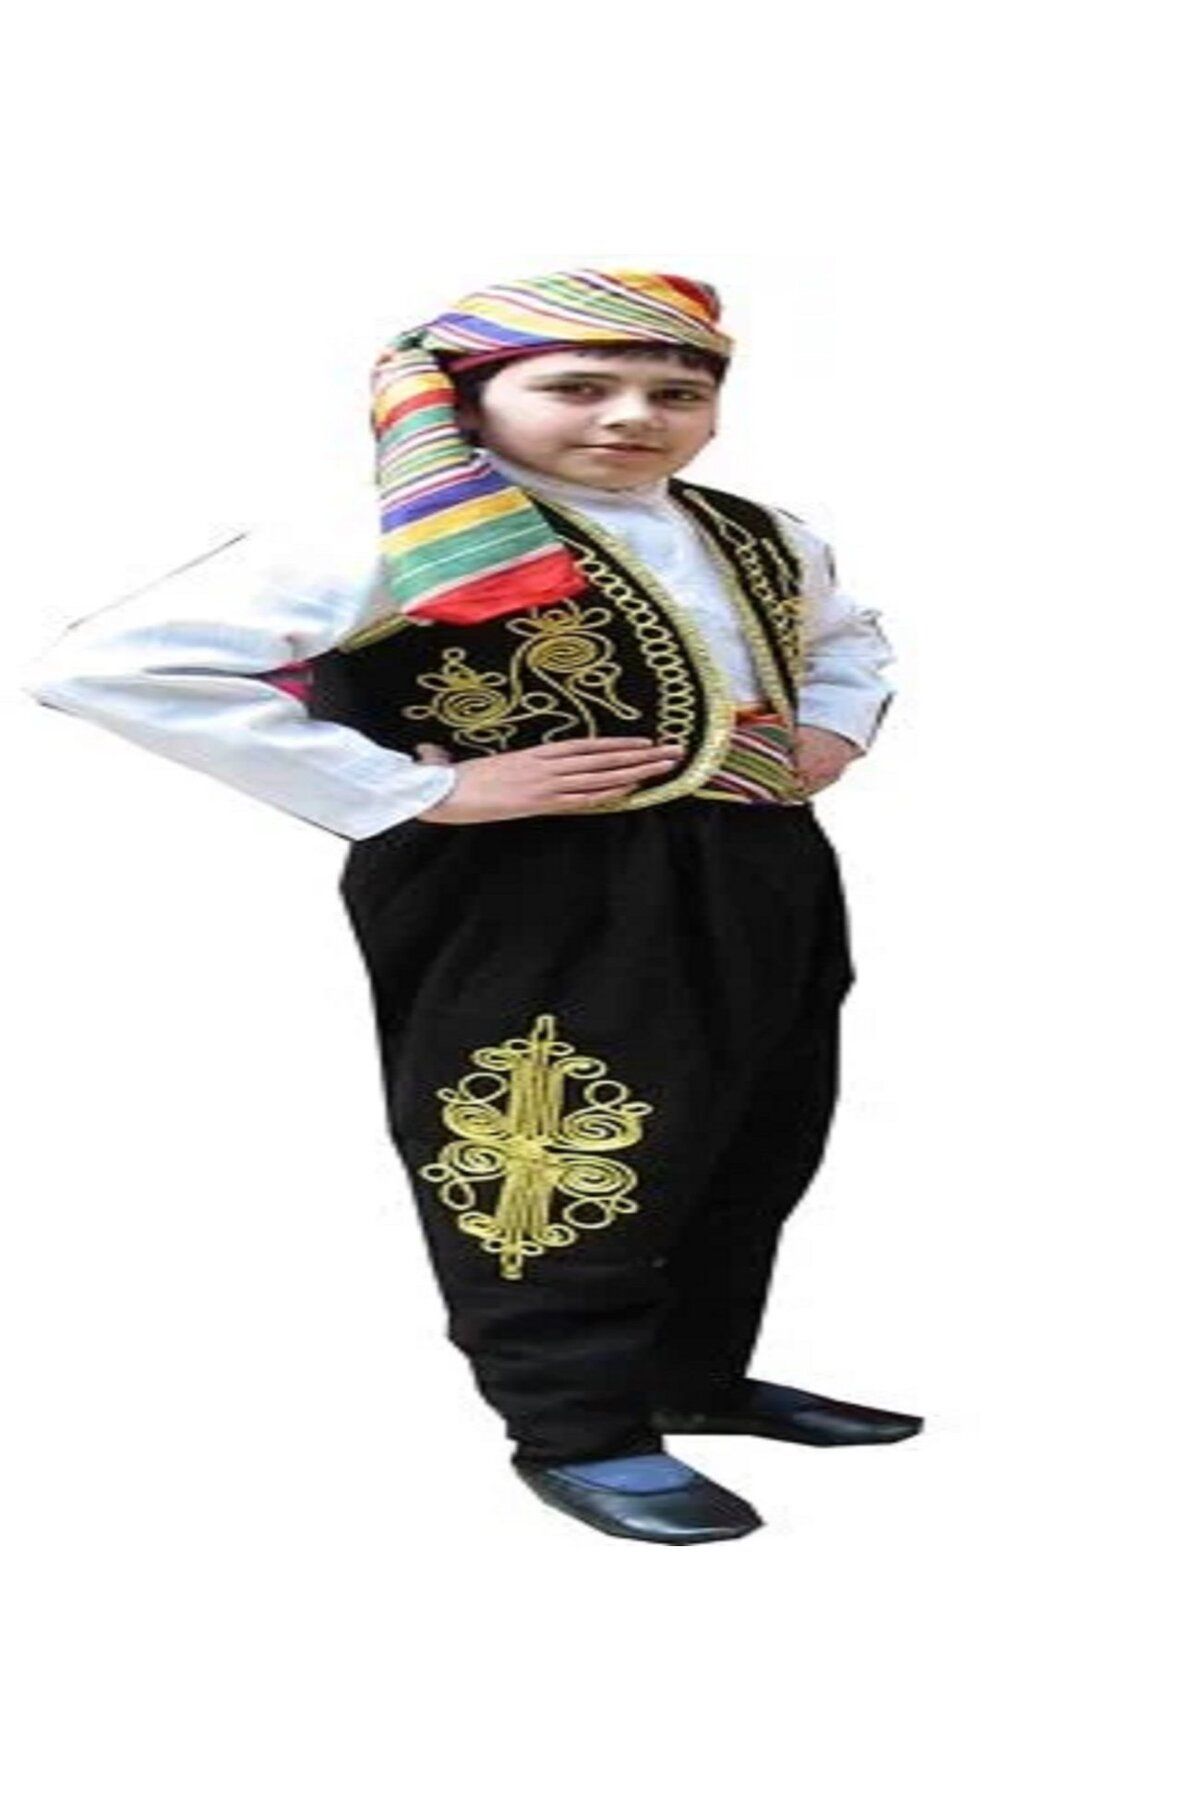 DilekKostüm Folklör erkek çocuk kostümü yöresel 23 nisan kıyafeti cepken şalvar fes zeybek seymen kaşık oyunu